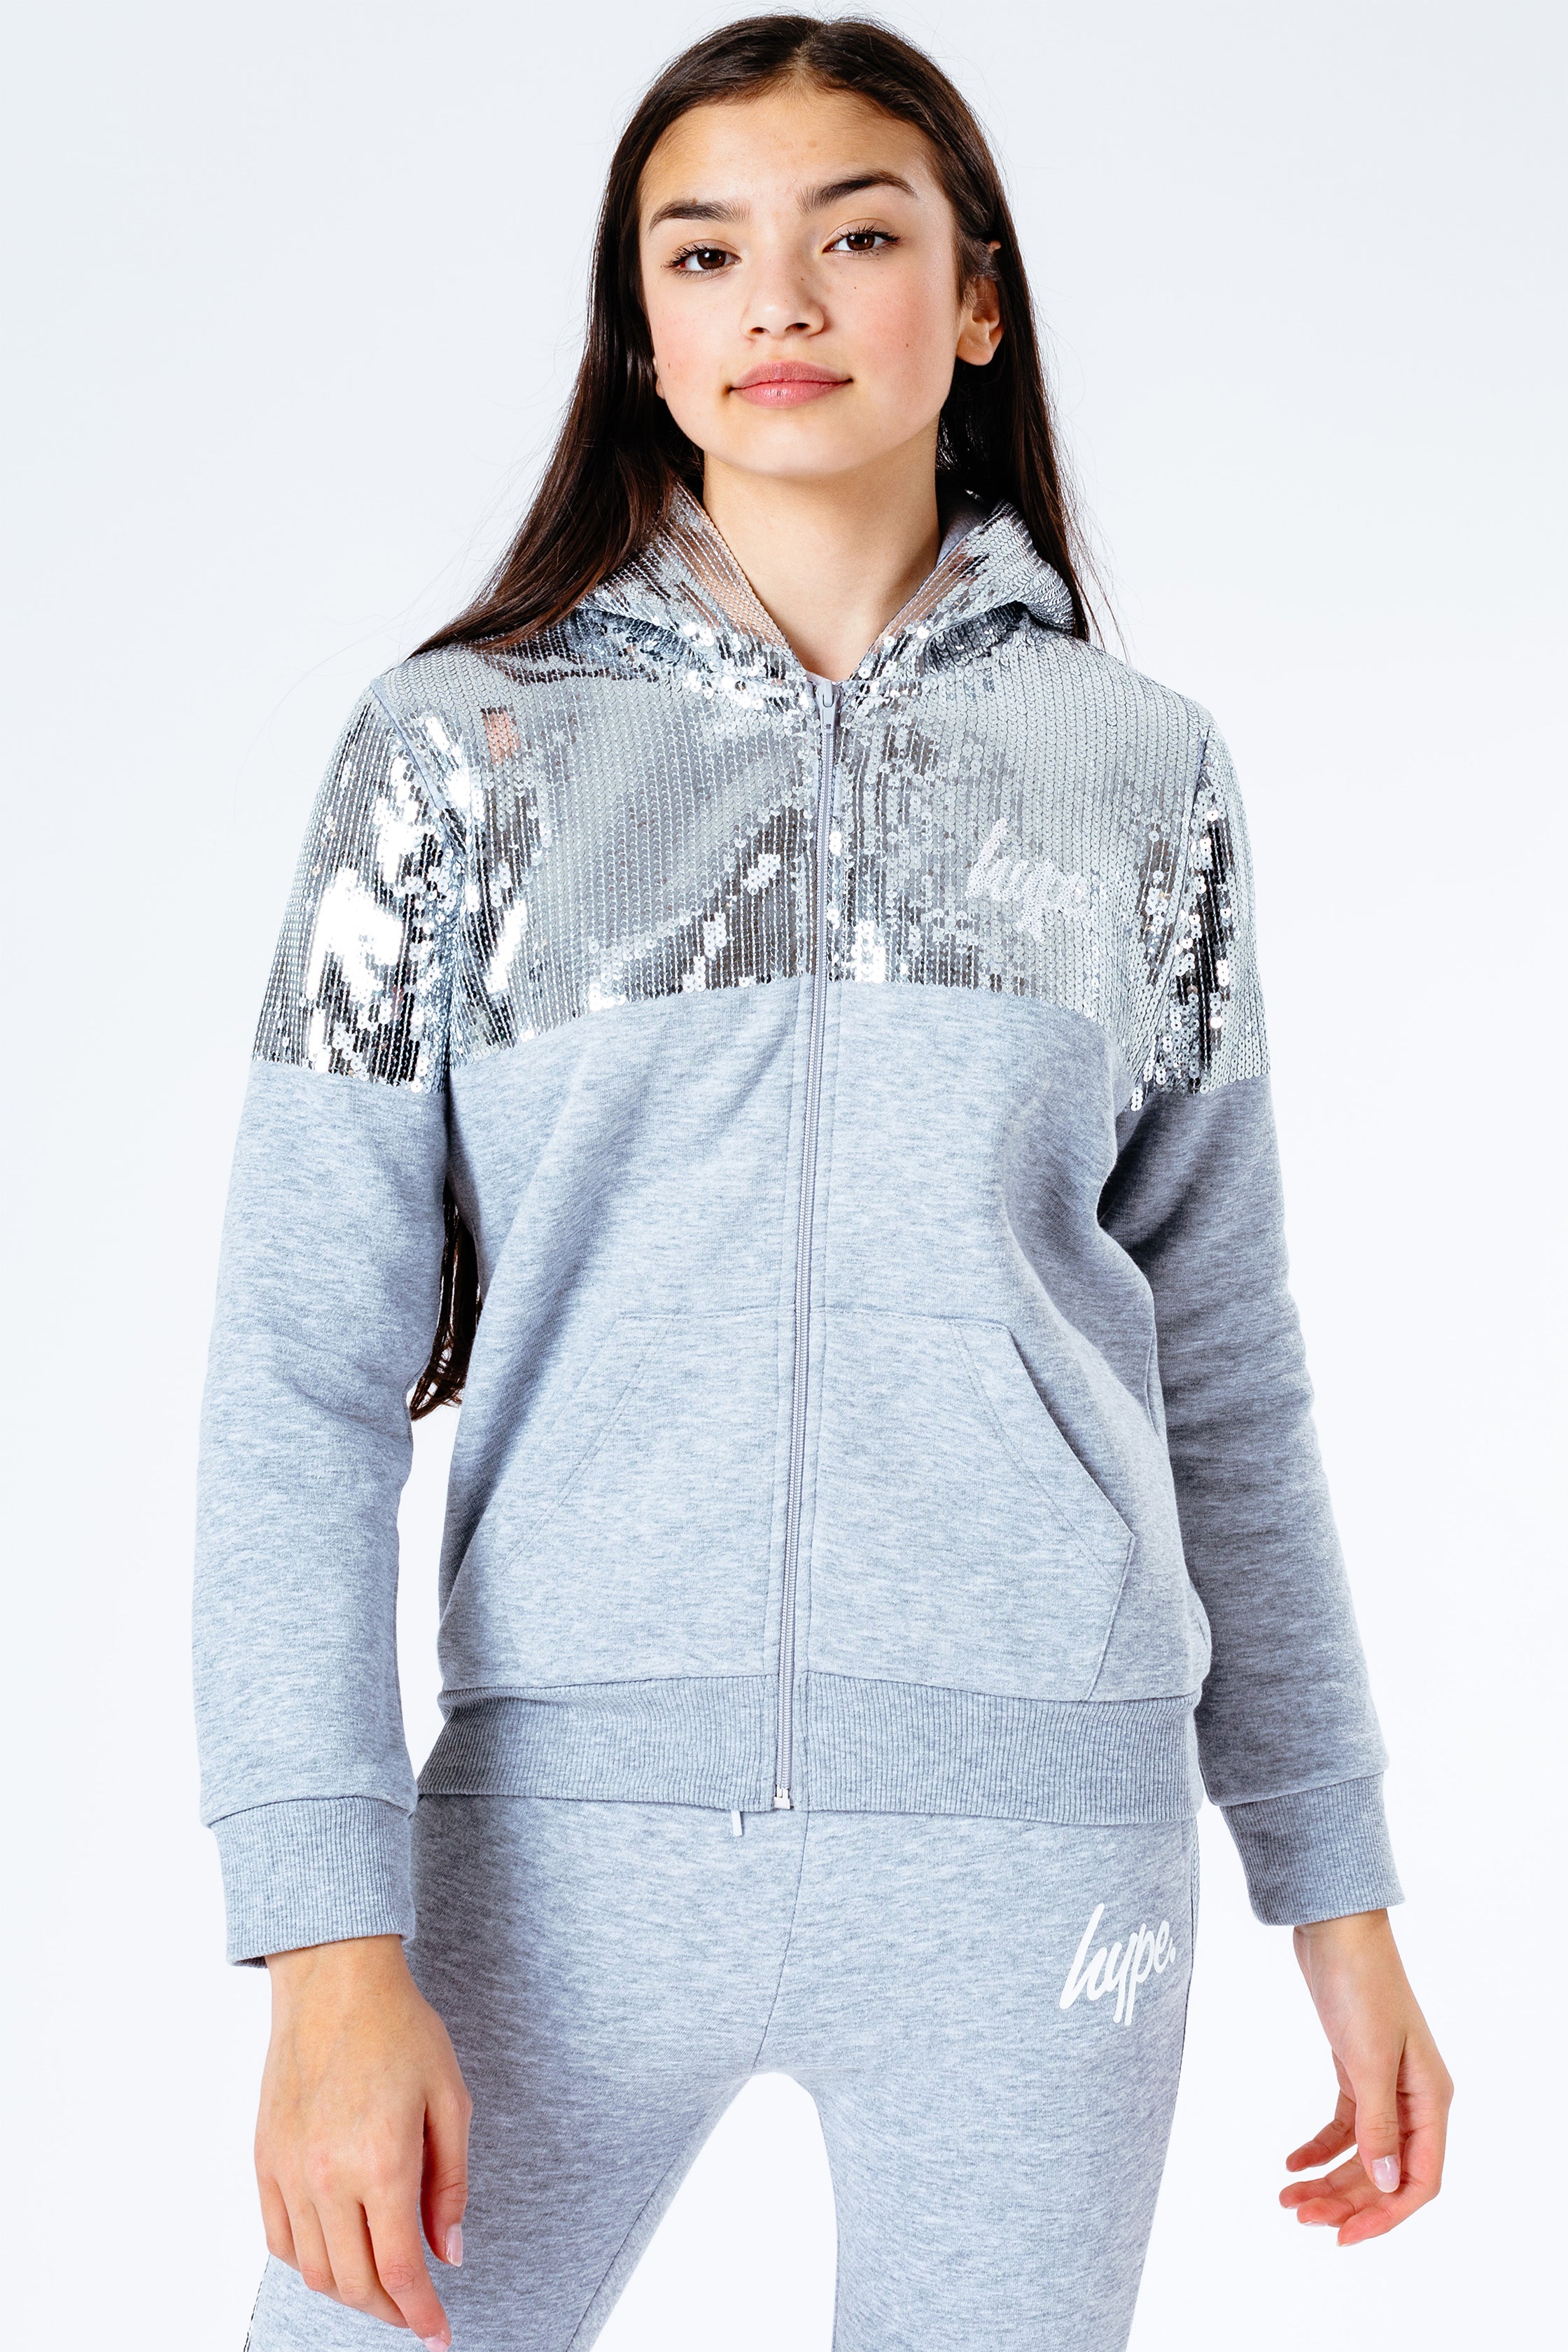 hype silver sequin girls zip hoodie